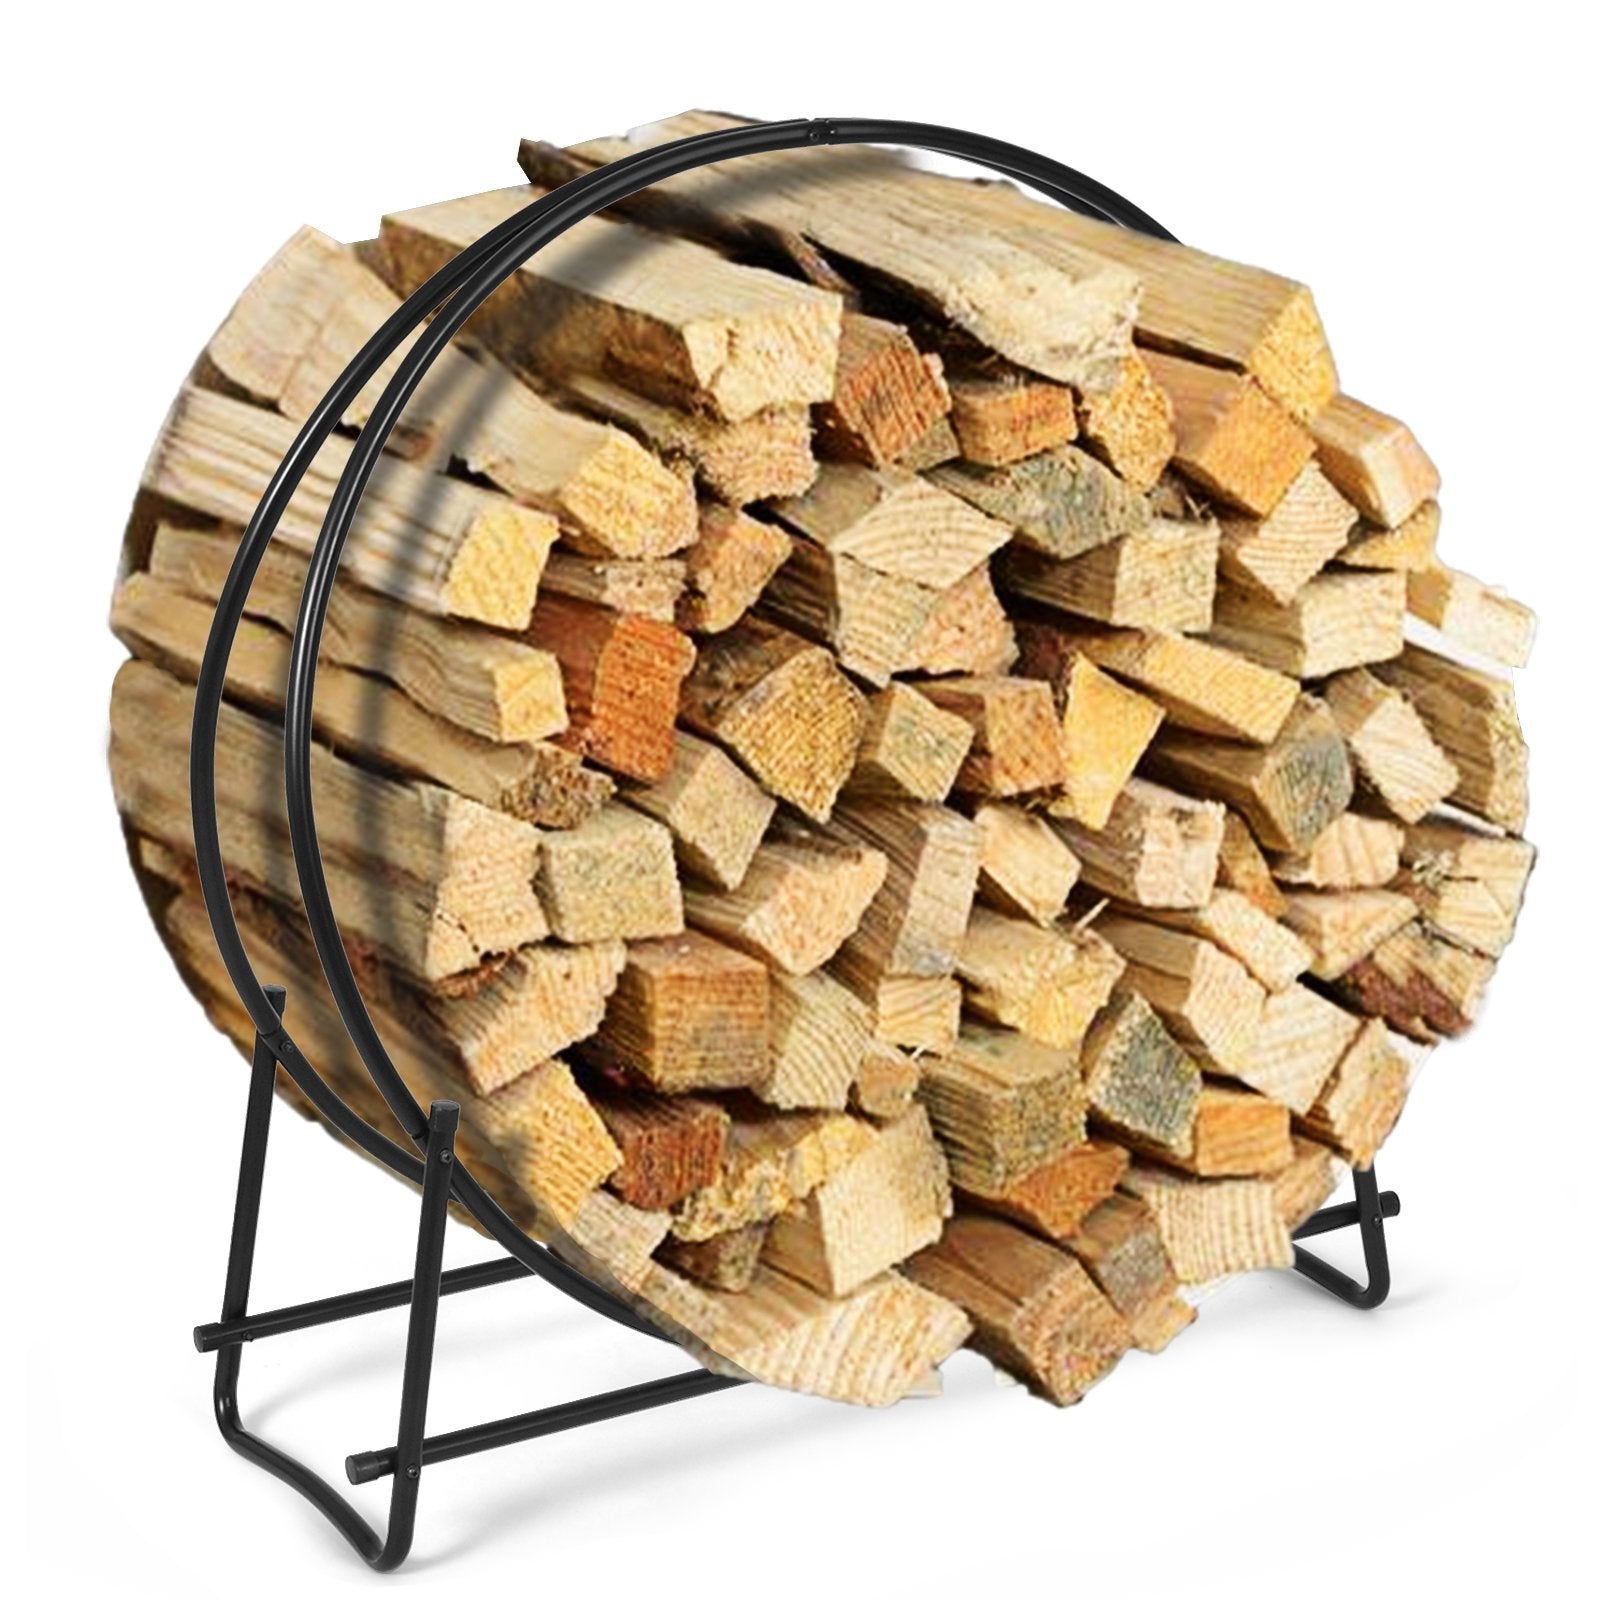 40-inch Tubular Steel Firewood Storage Rack, Black - Gallery Canada